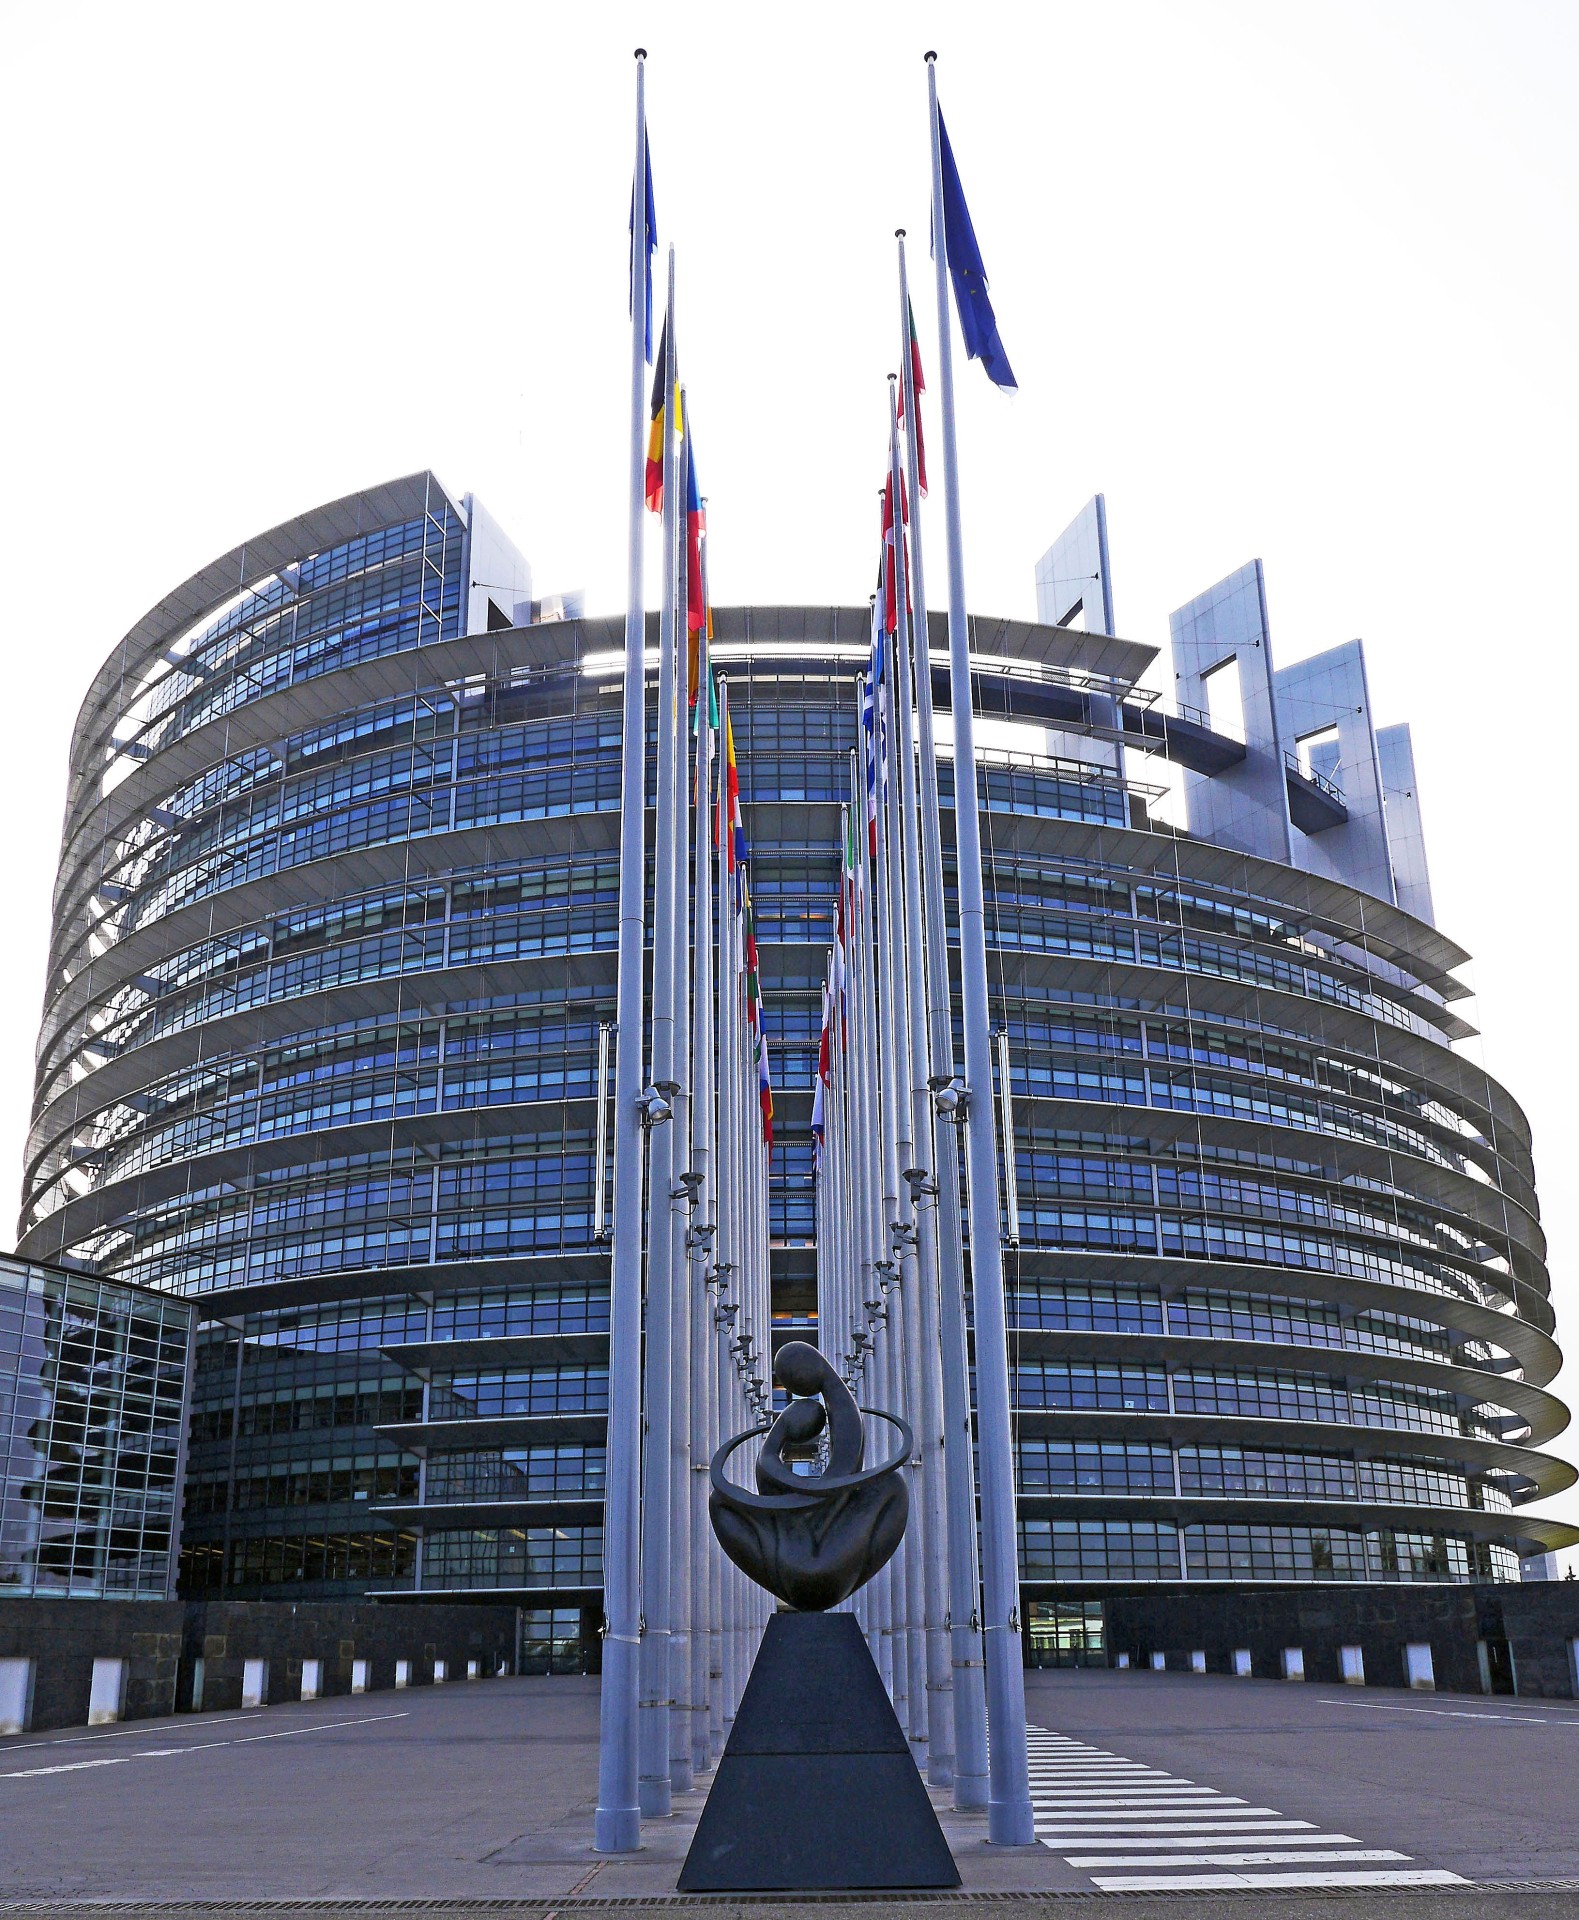 EXCLU WEB / Les députés européens veulent plus peser dans la PAC